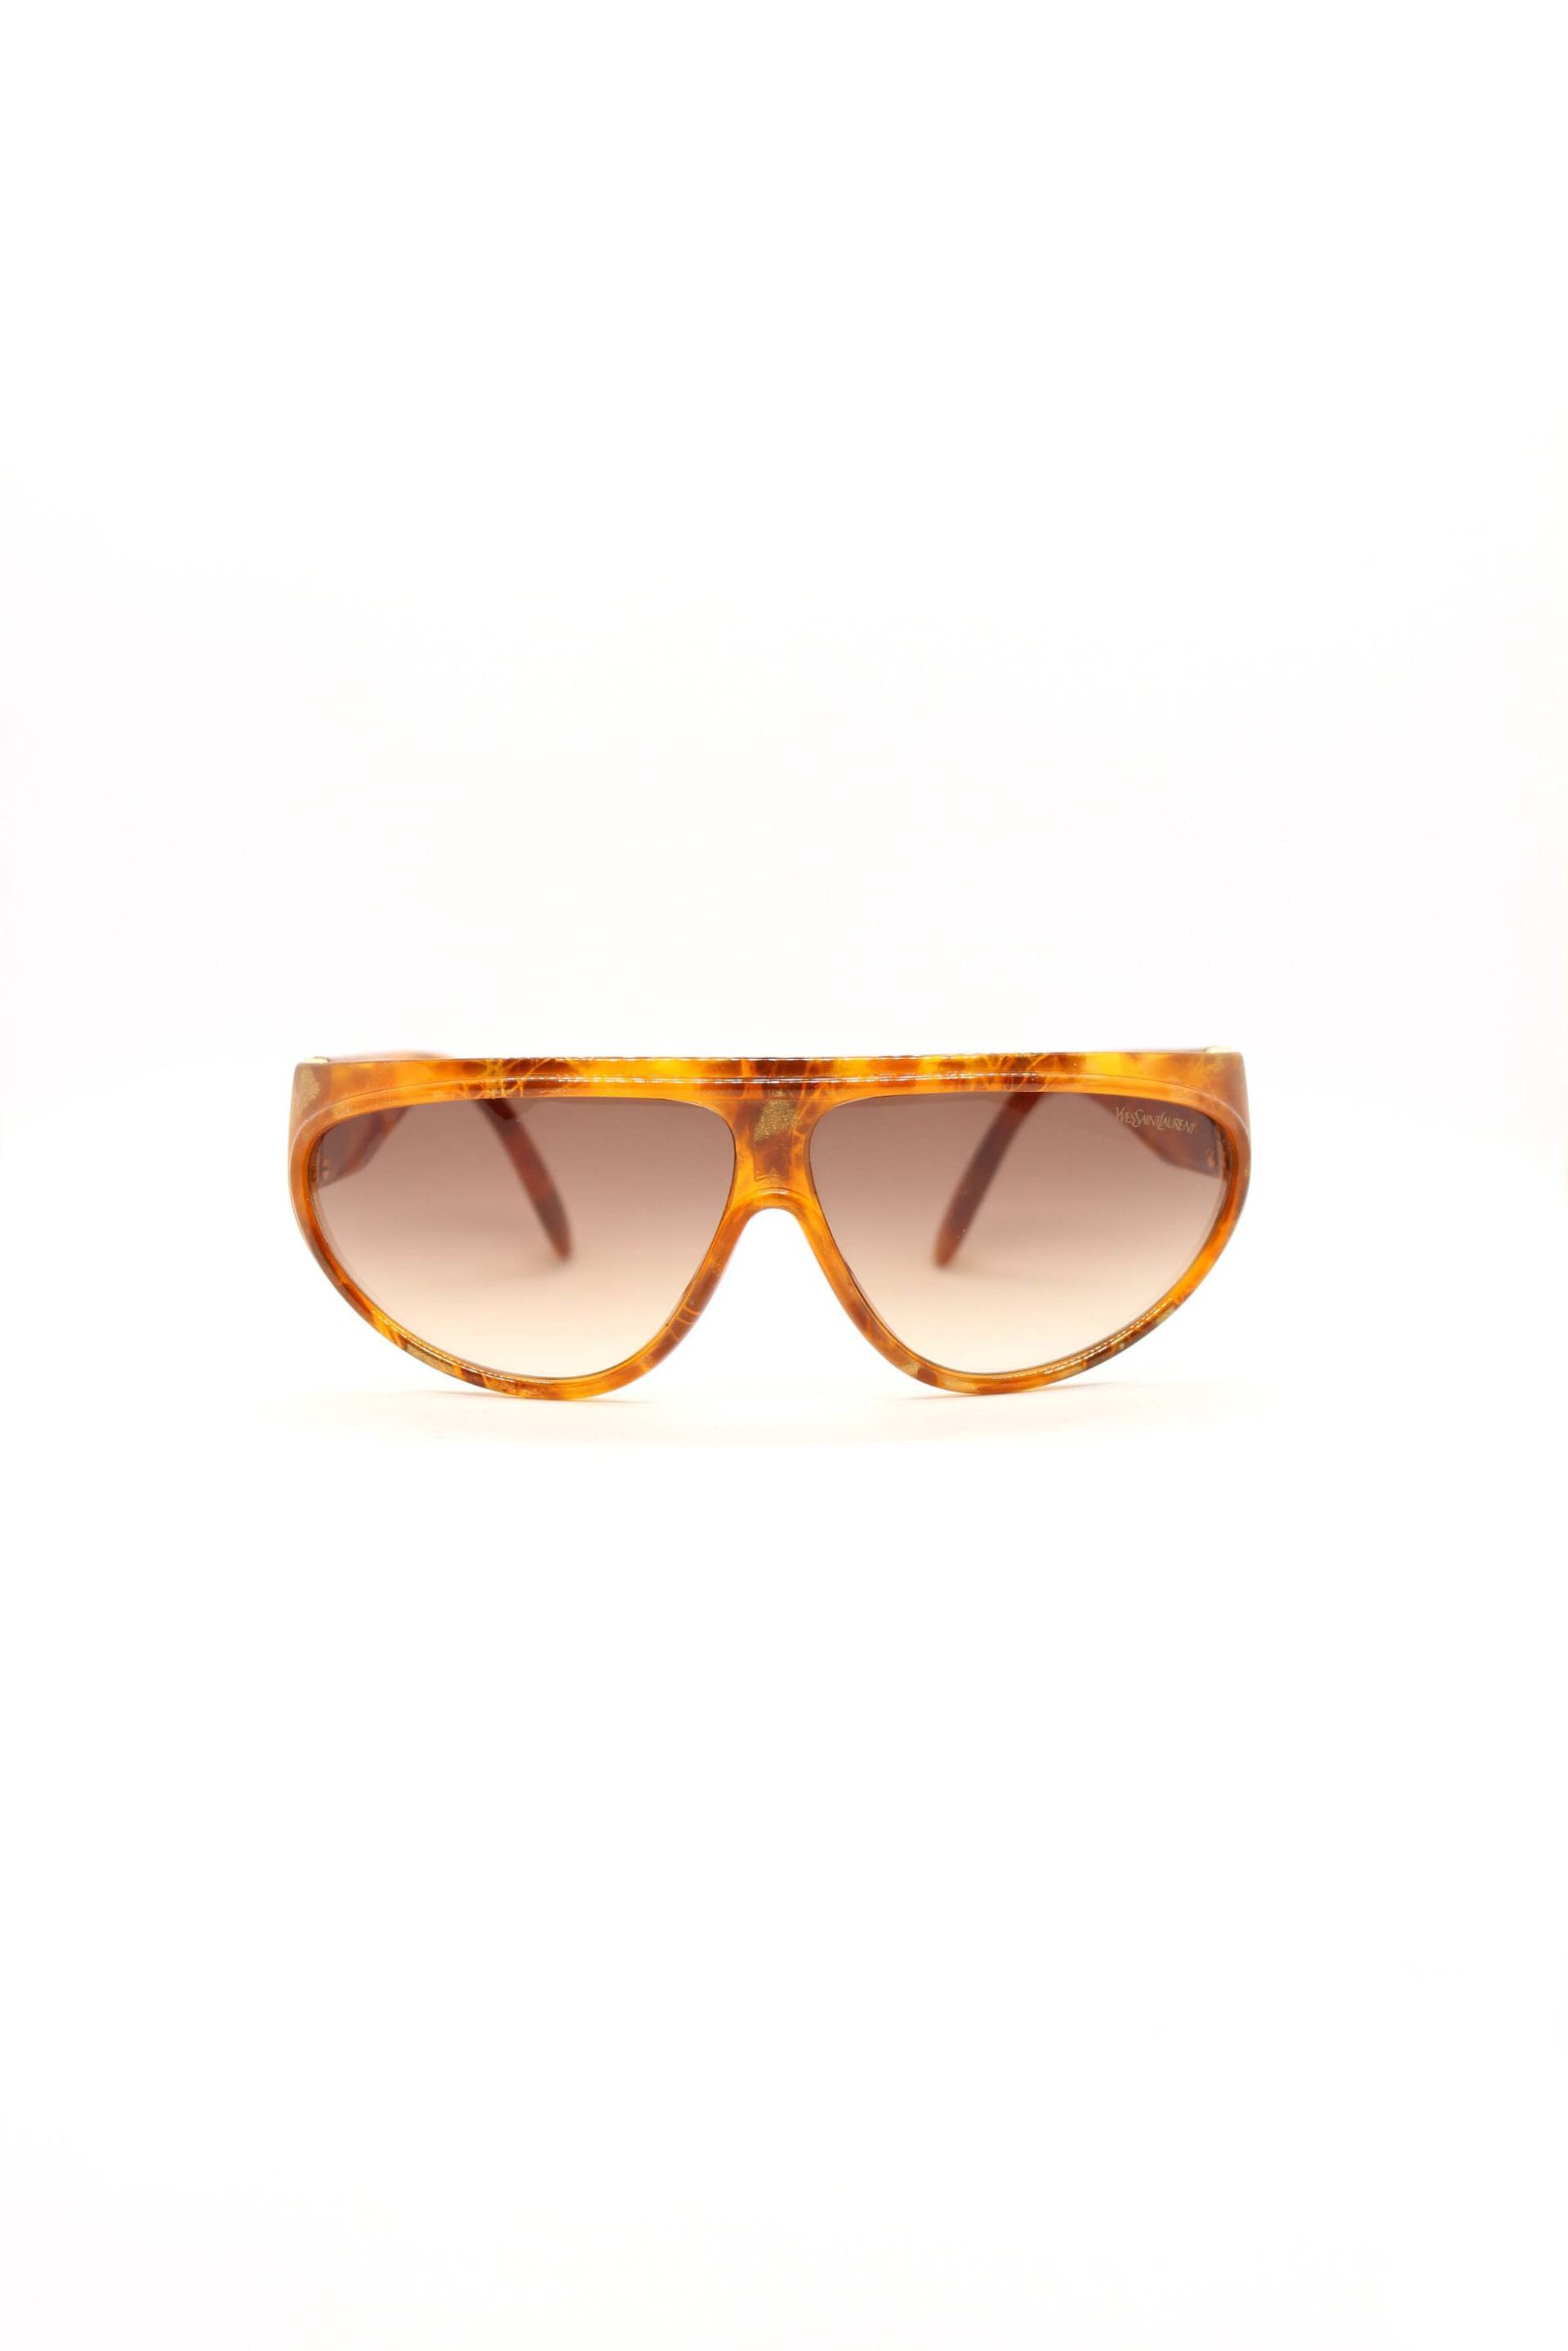 Yves Saint Laurent 80Er Jahre Vintage Sonnenbrille - Brandneu 8761-1 Und 190 von VintageAndOtherThing